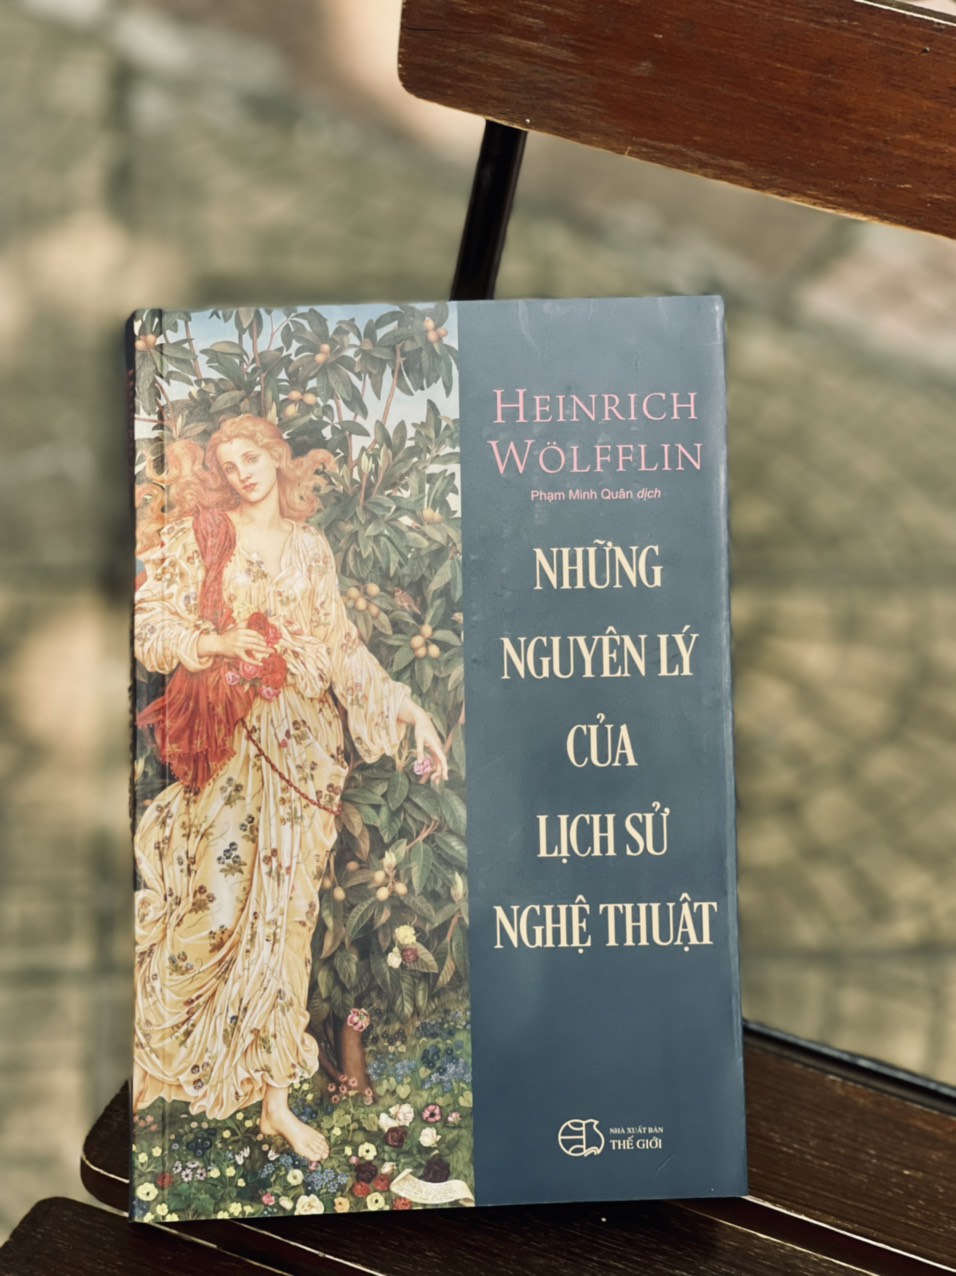 [Tủ sách Văn hóa học] NHỮNG NGUYÊN LÝ CỦA LỊCH SỬ NGHỆ THUẬT - Heinrich Wölfflin – Song Thủy Bookstore